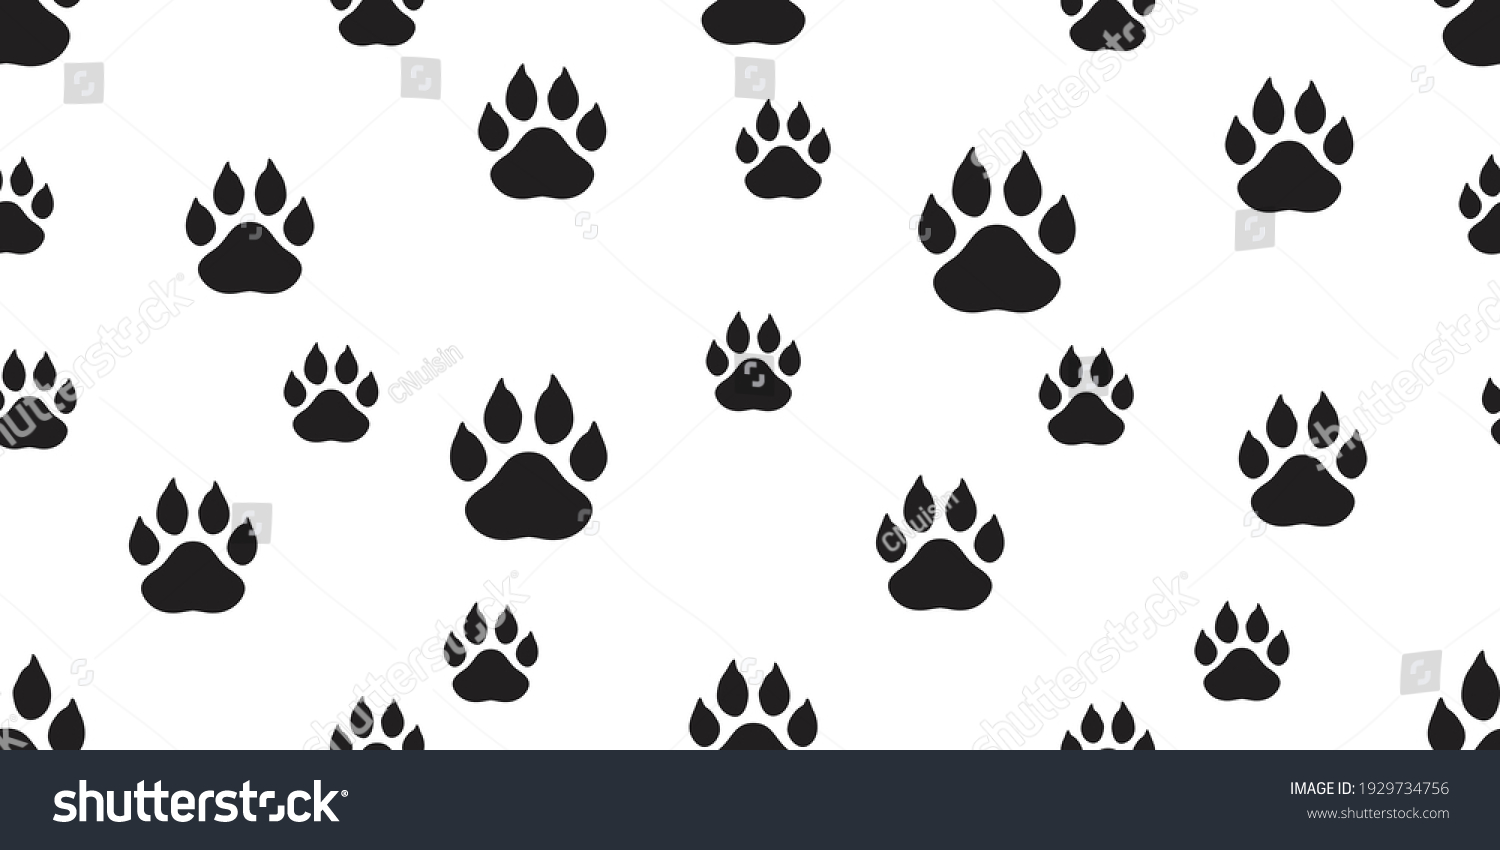 捕食者の足跡 野生動物の足跡 猫 熊 虎 狐 狼の足跡 捕食者の足跡シルエットイラストセット 哺乳類の足跡 動物の痕跡 捕食者の危険性 のイラスト素材 Shutterstock